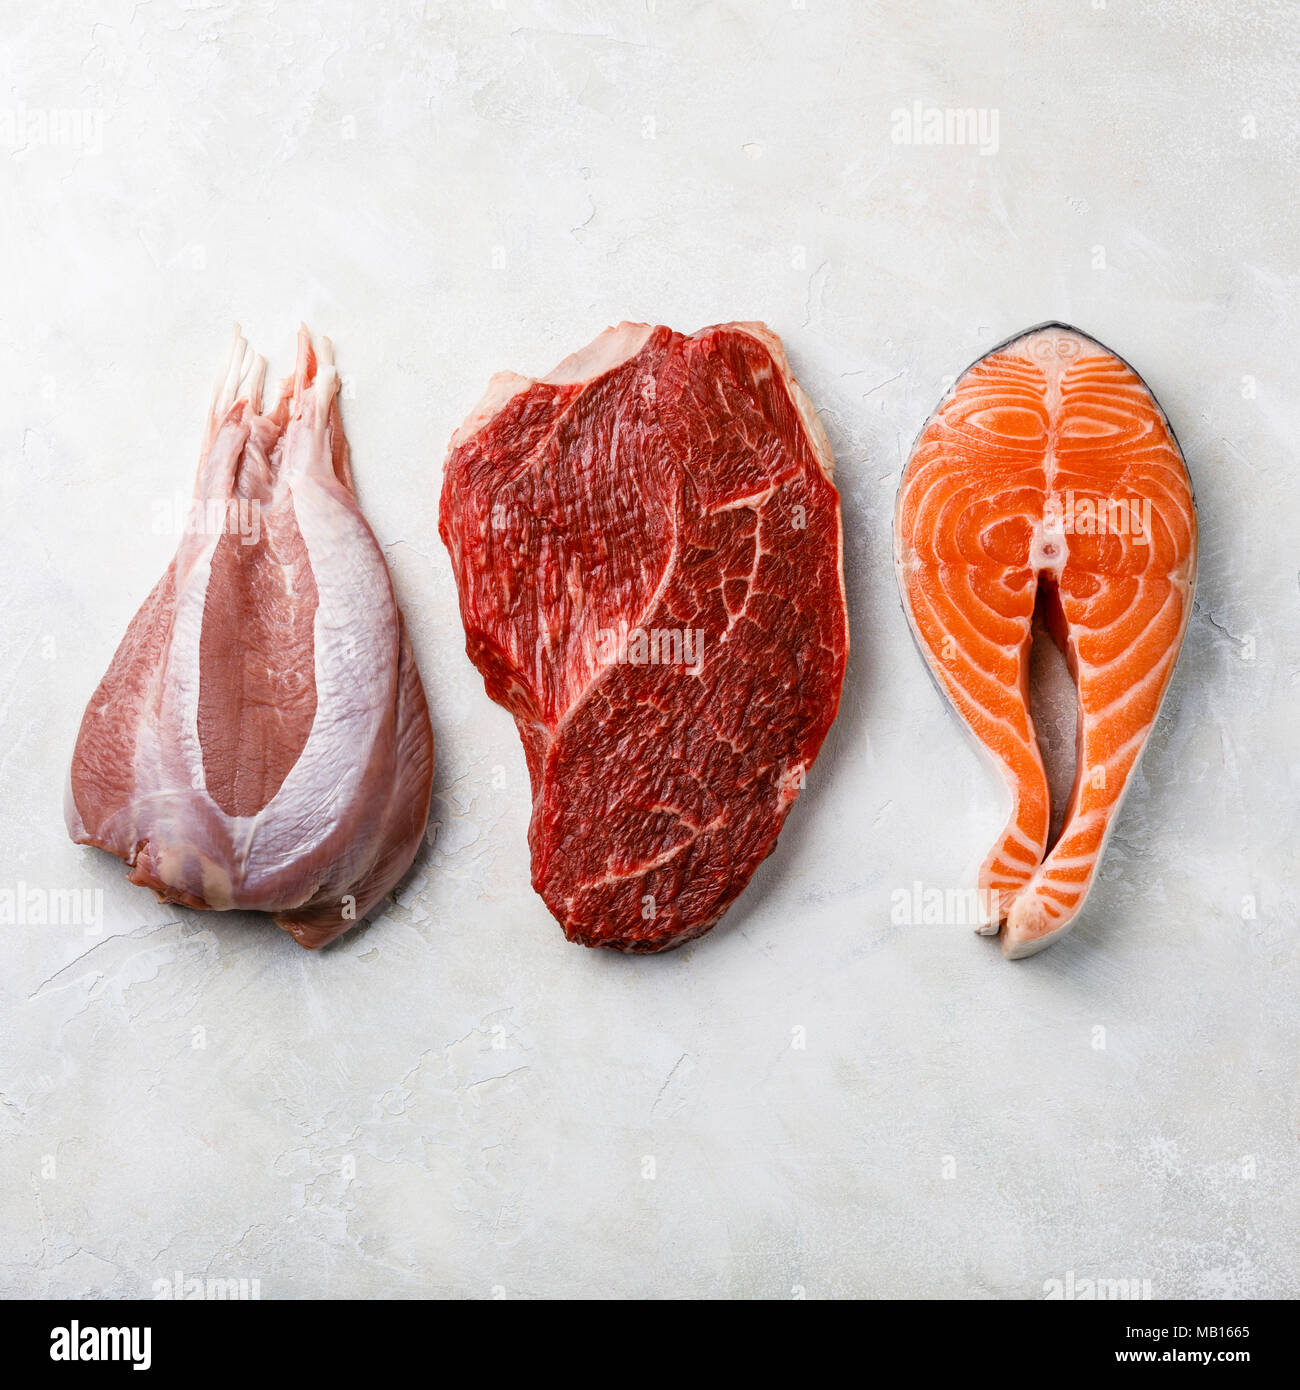 Les aliments crus viande de dinde, viande de boeuf et de poissons gras saumon steak on white background Banque D'Images